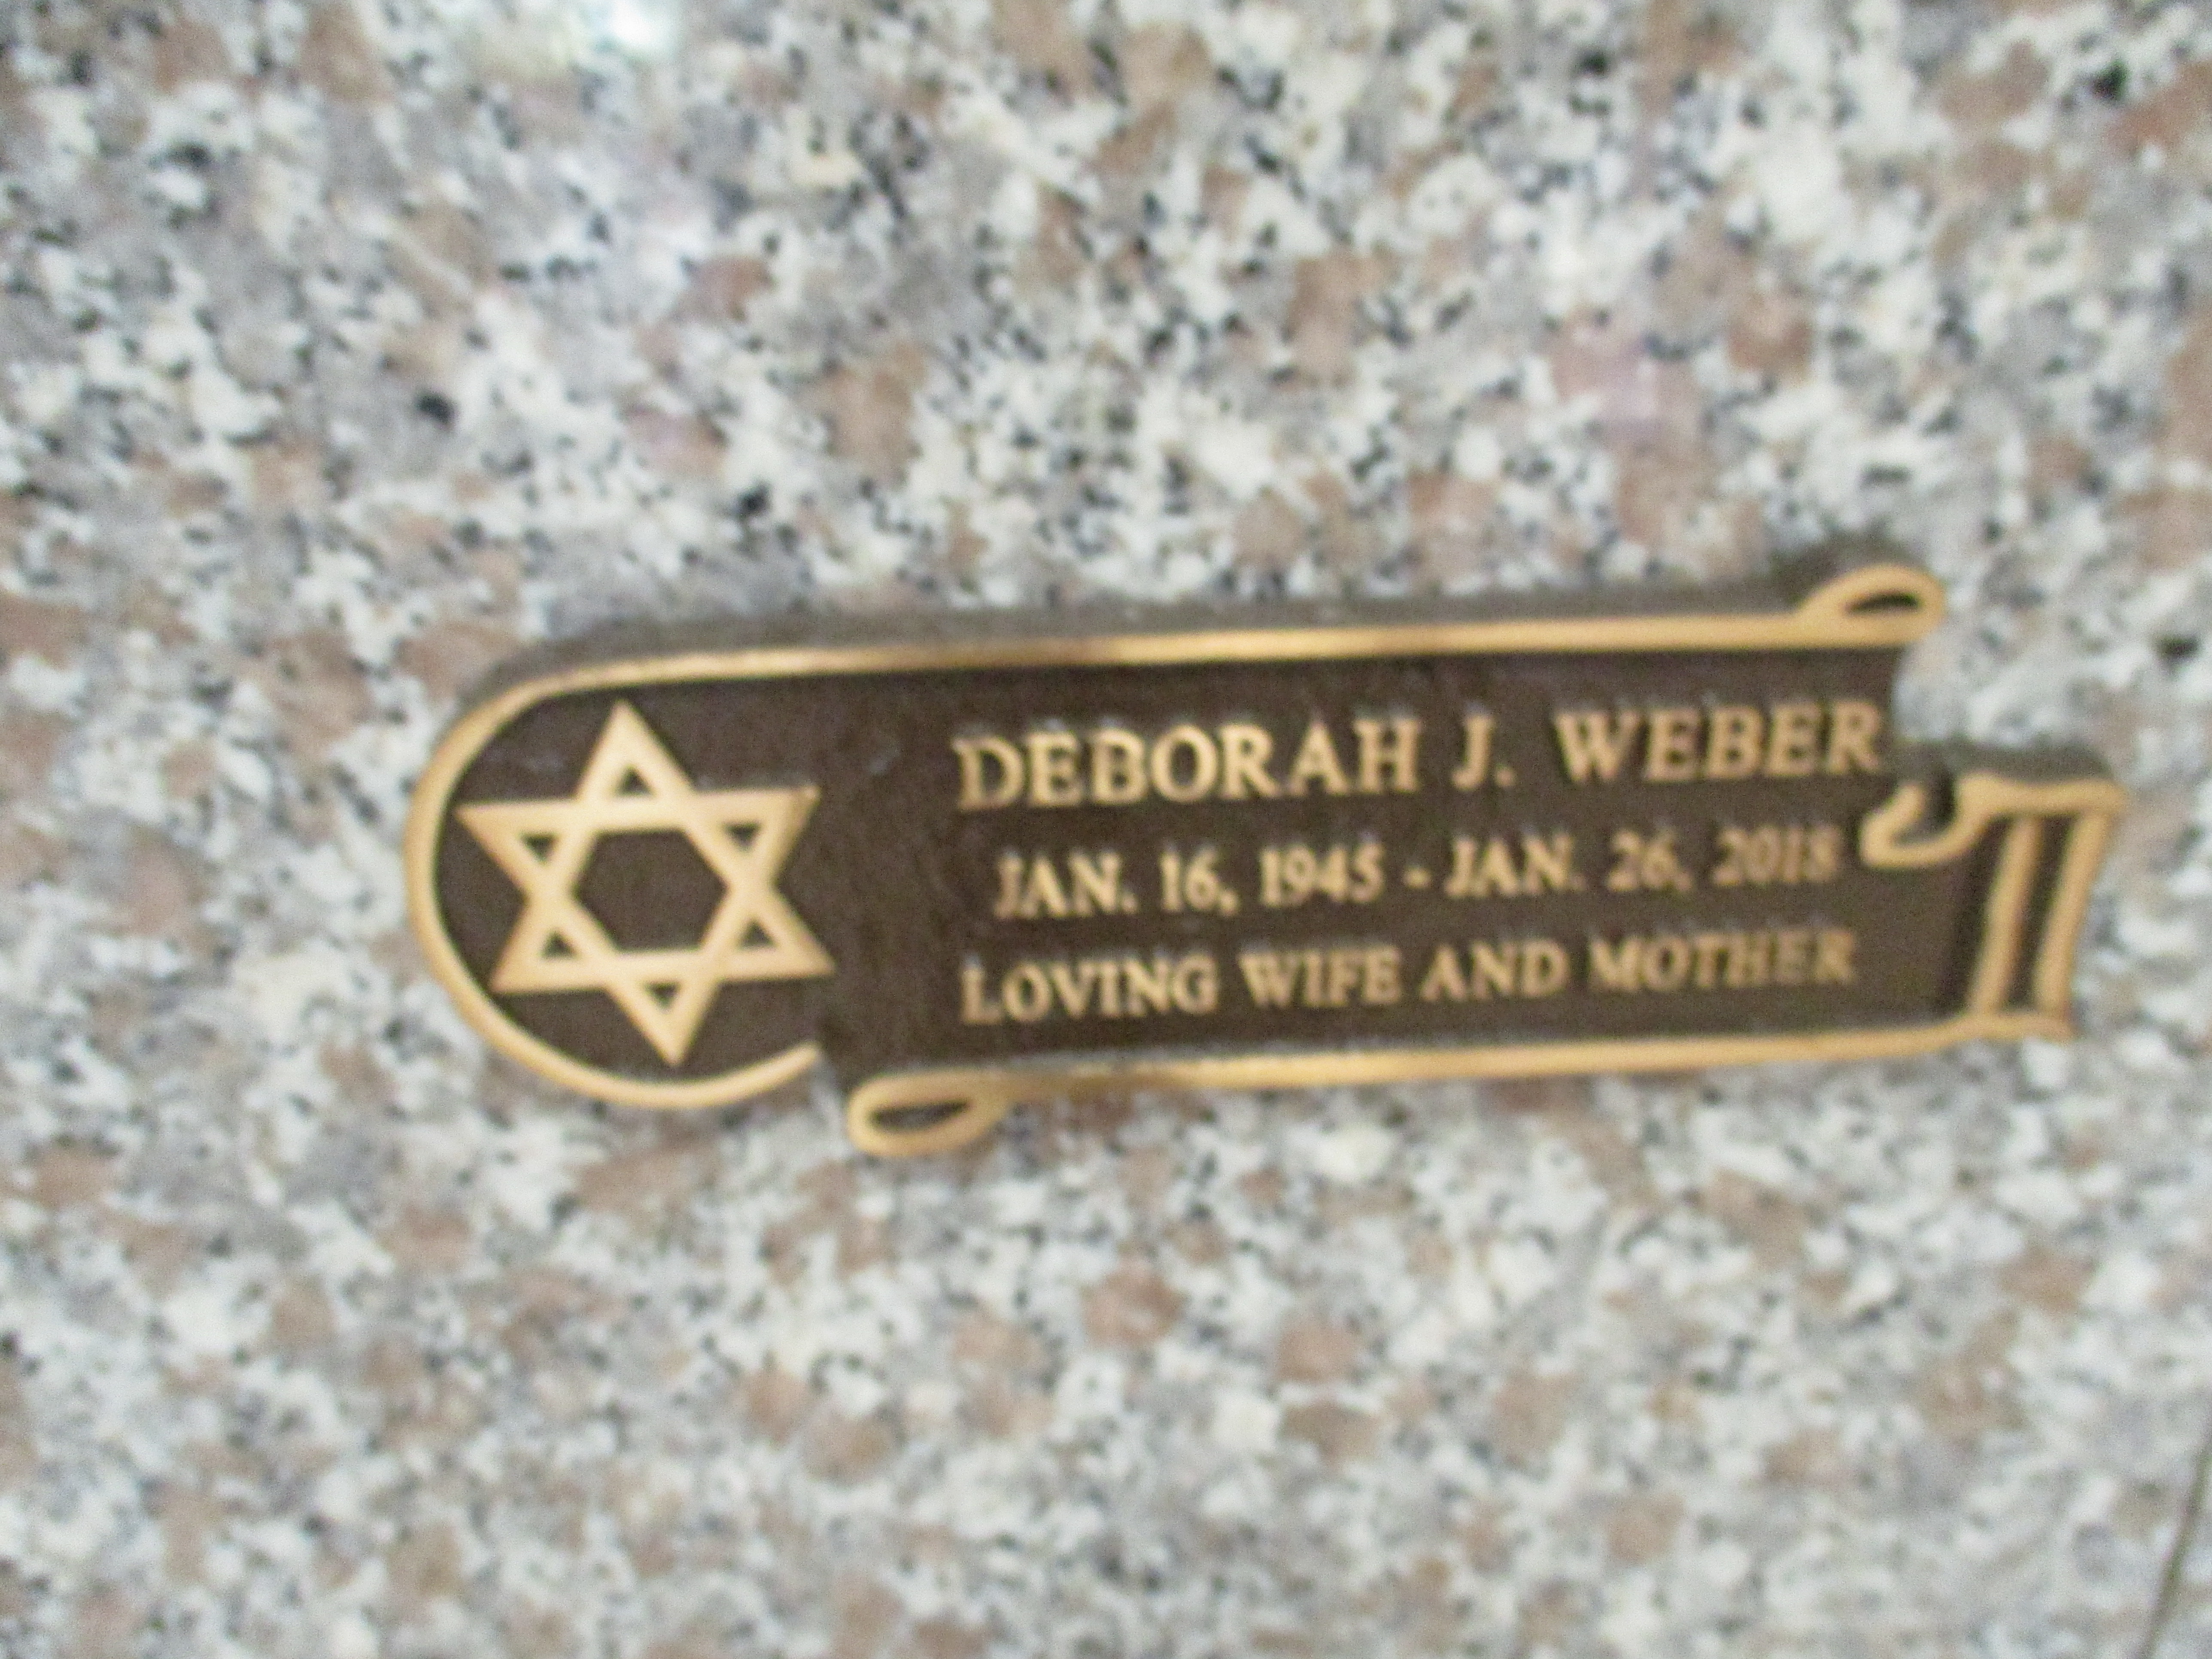 Deborah J Weber